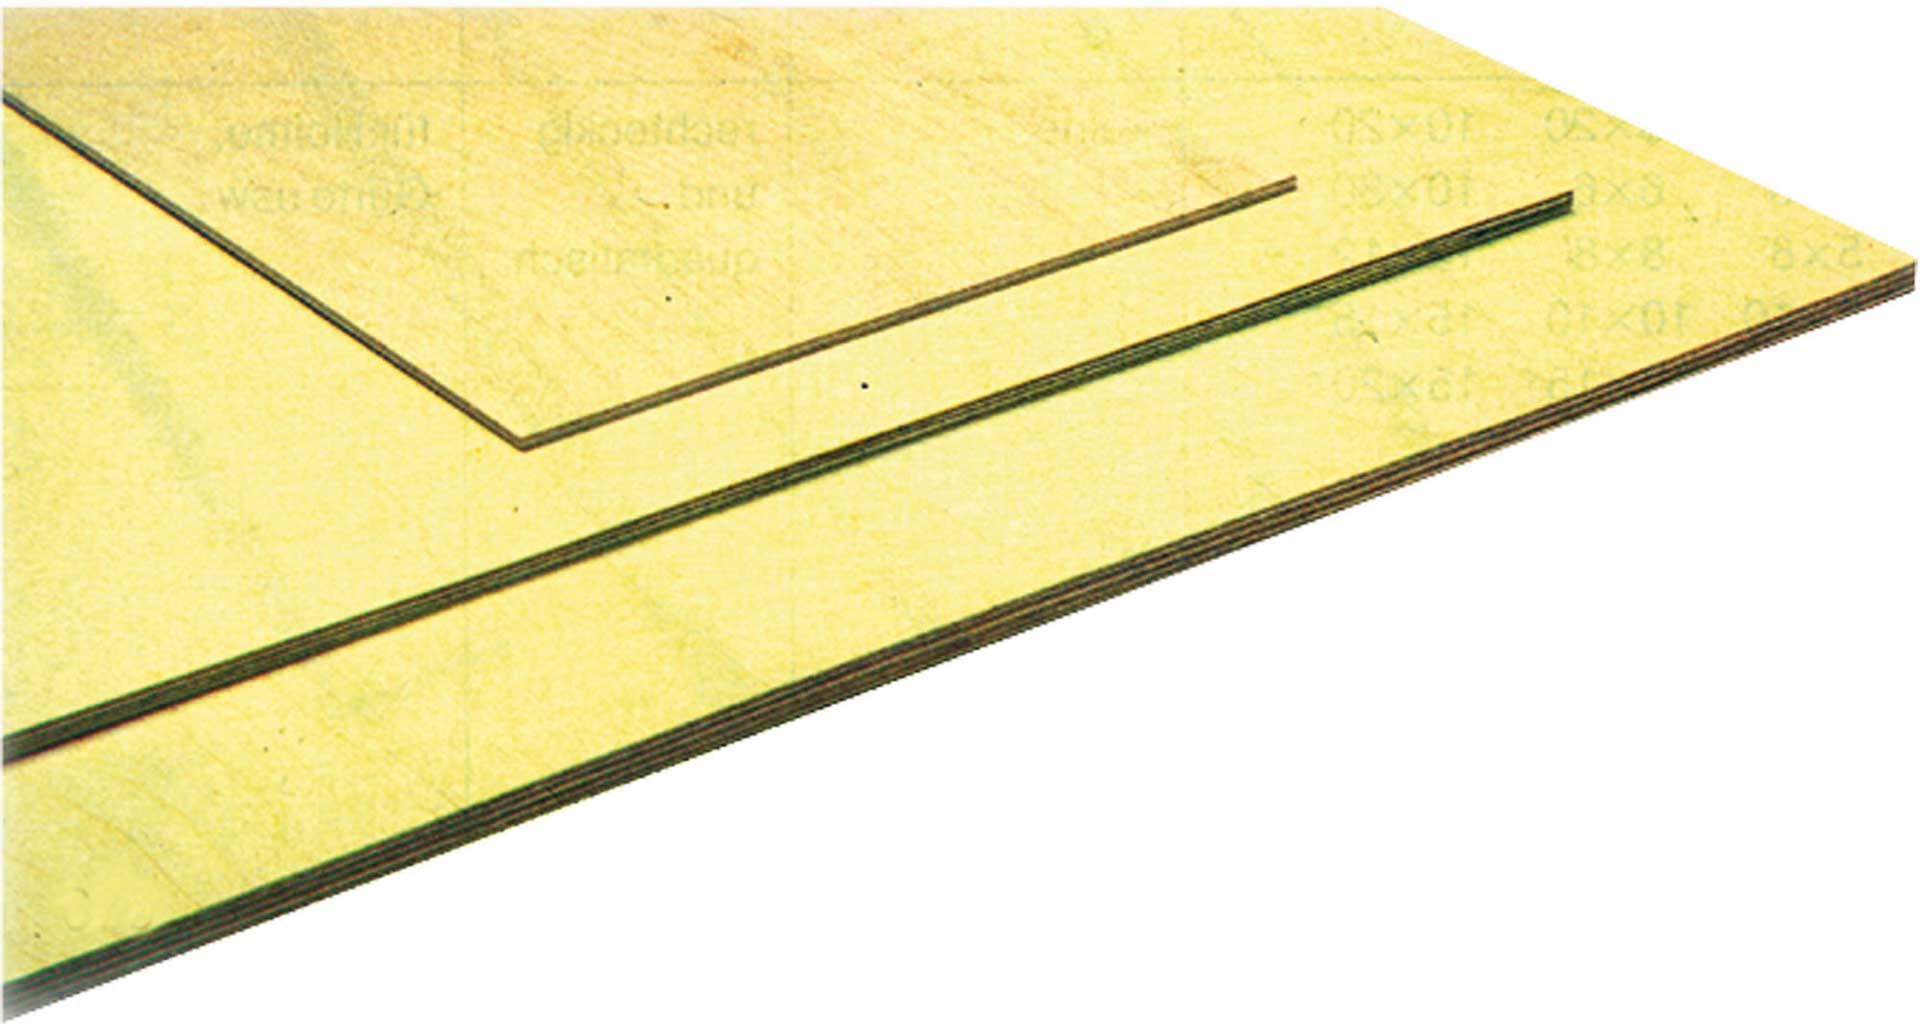 MODELLBAU LINDINGER poplar plywood 5x300x1200mm